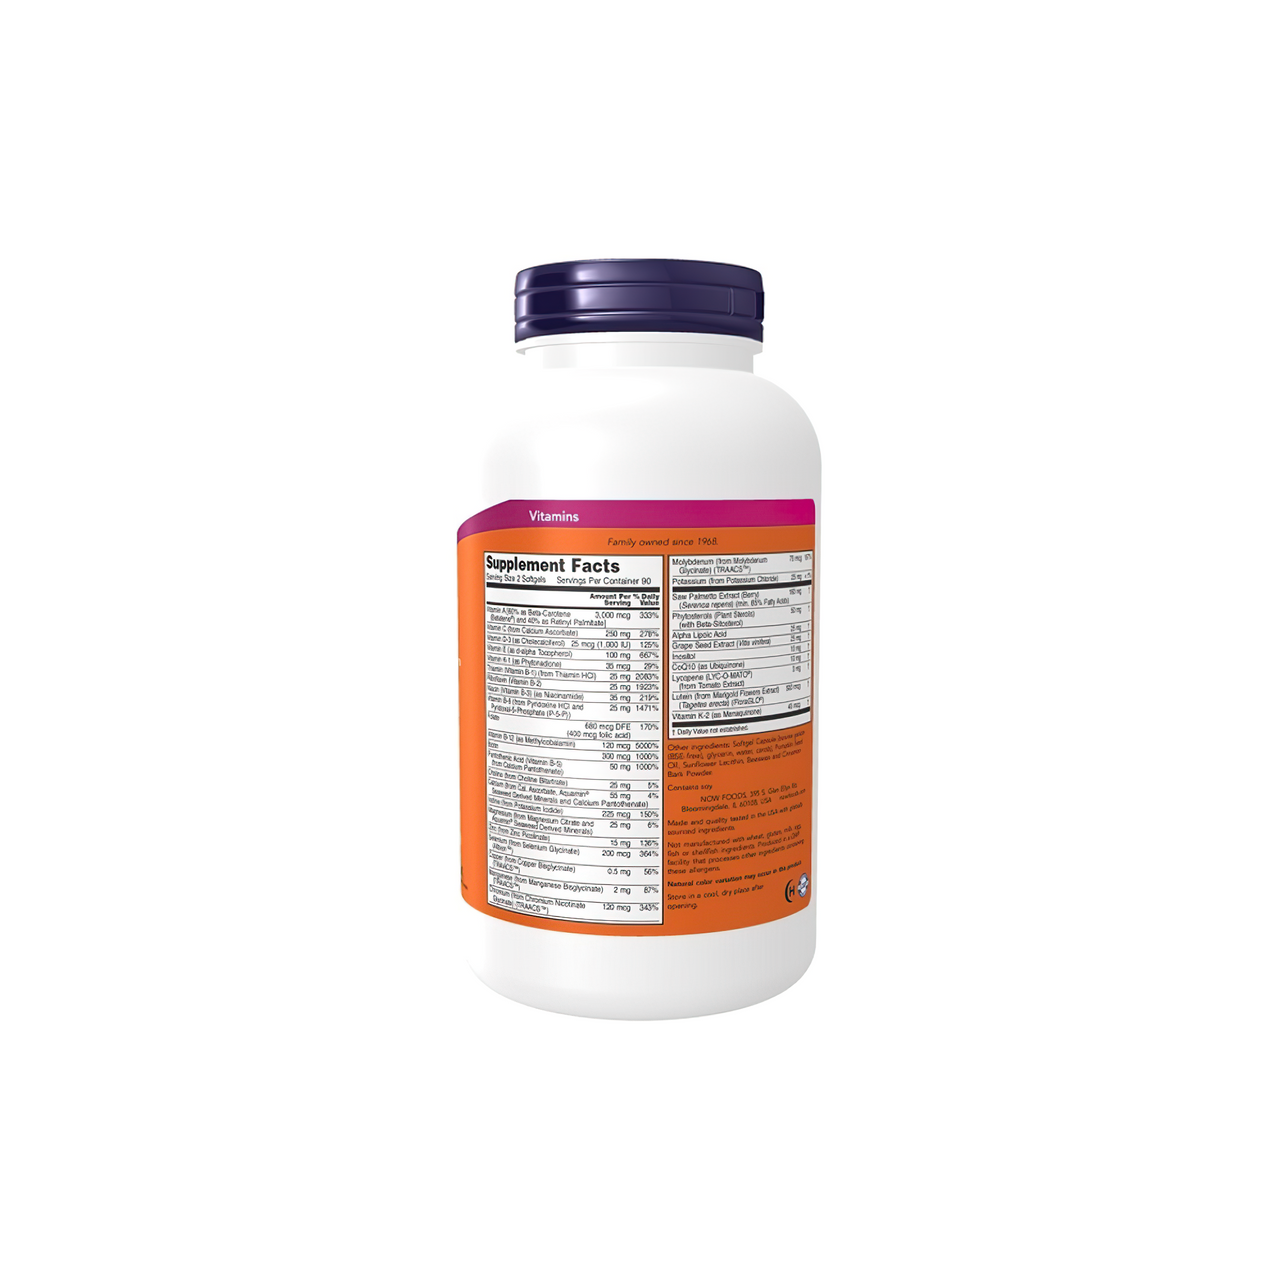 Um frasco de Now Foods ADAM Multivitamins & Minerals for Man 180 sgel sobre um fundo branco.